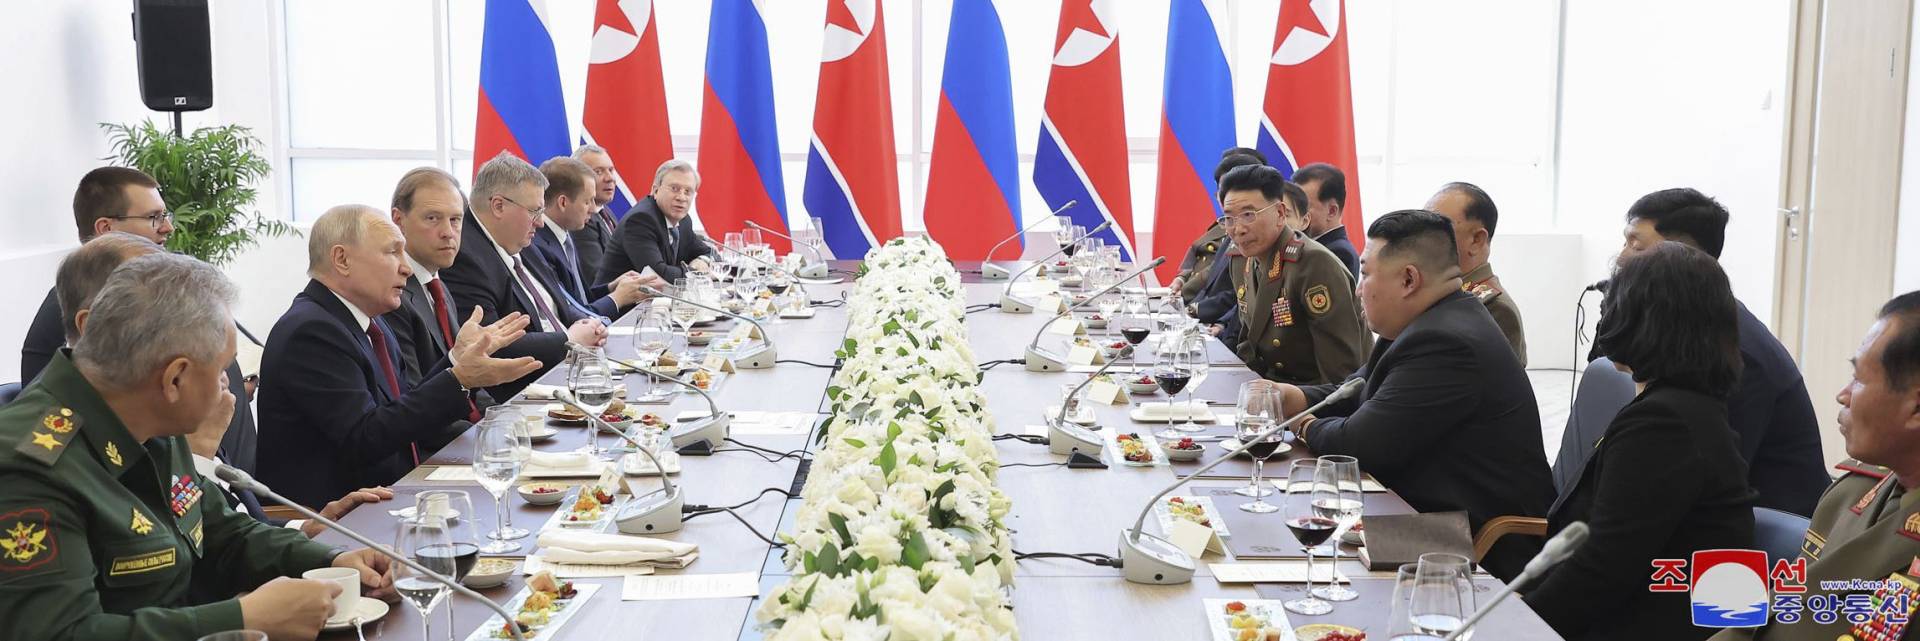 Κρεμλίνο: Η Μόσχα δεν υπέγραψε καμία συμφωνία με την Πιονγιάνγκ στη συνάντηση Πούτιν-Κιμ